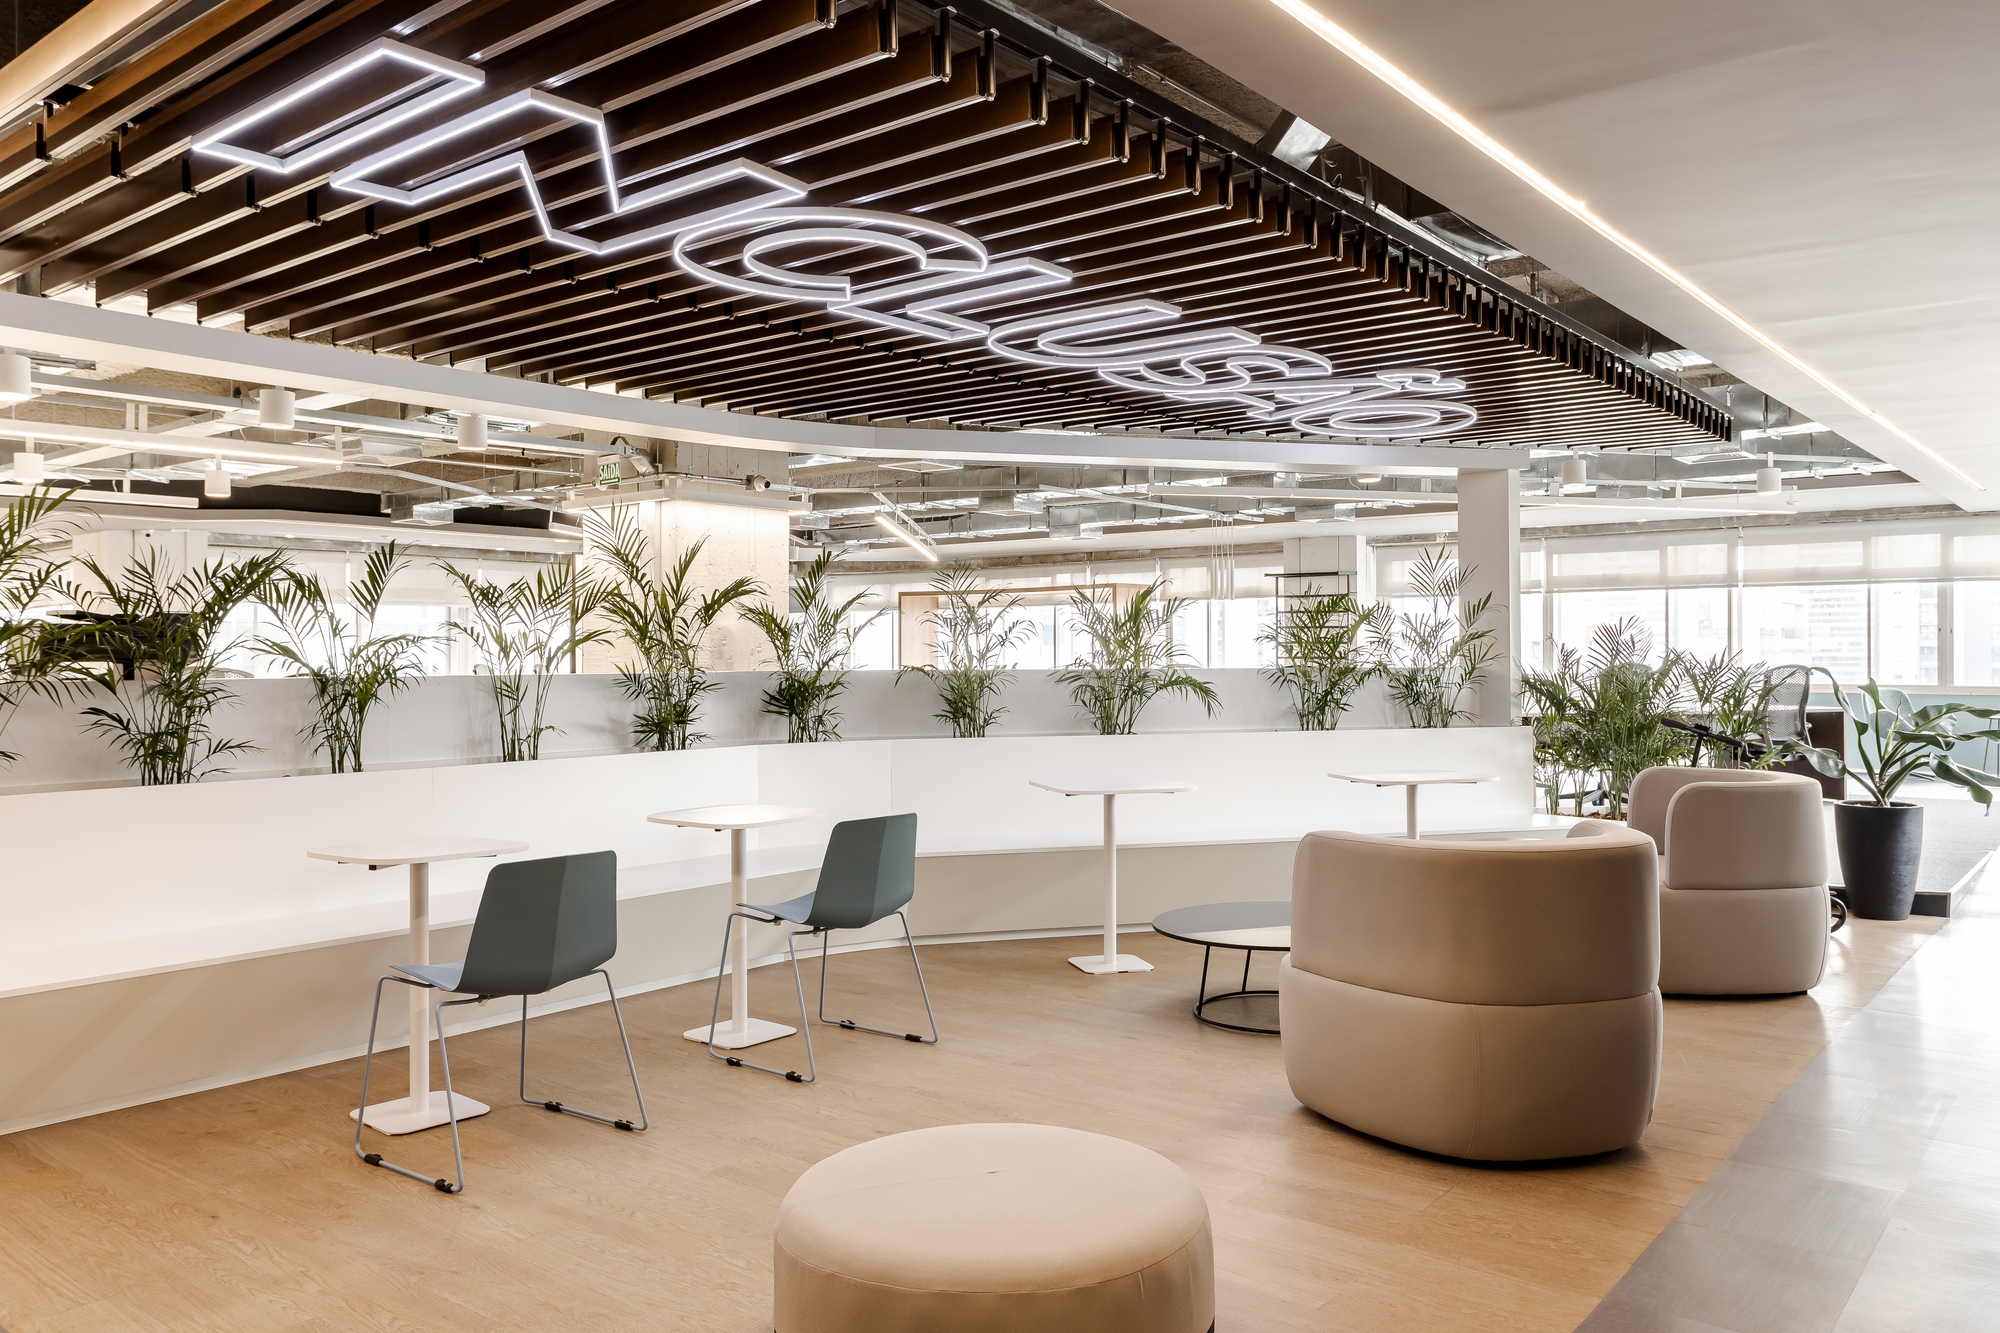 图片[11]|BMG银行办公室——圣保罗|ART-Arrakis | 建筑室内设计的创新与灵感